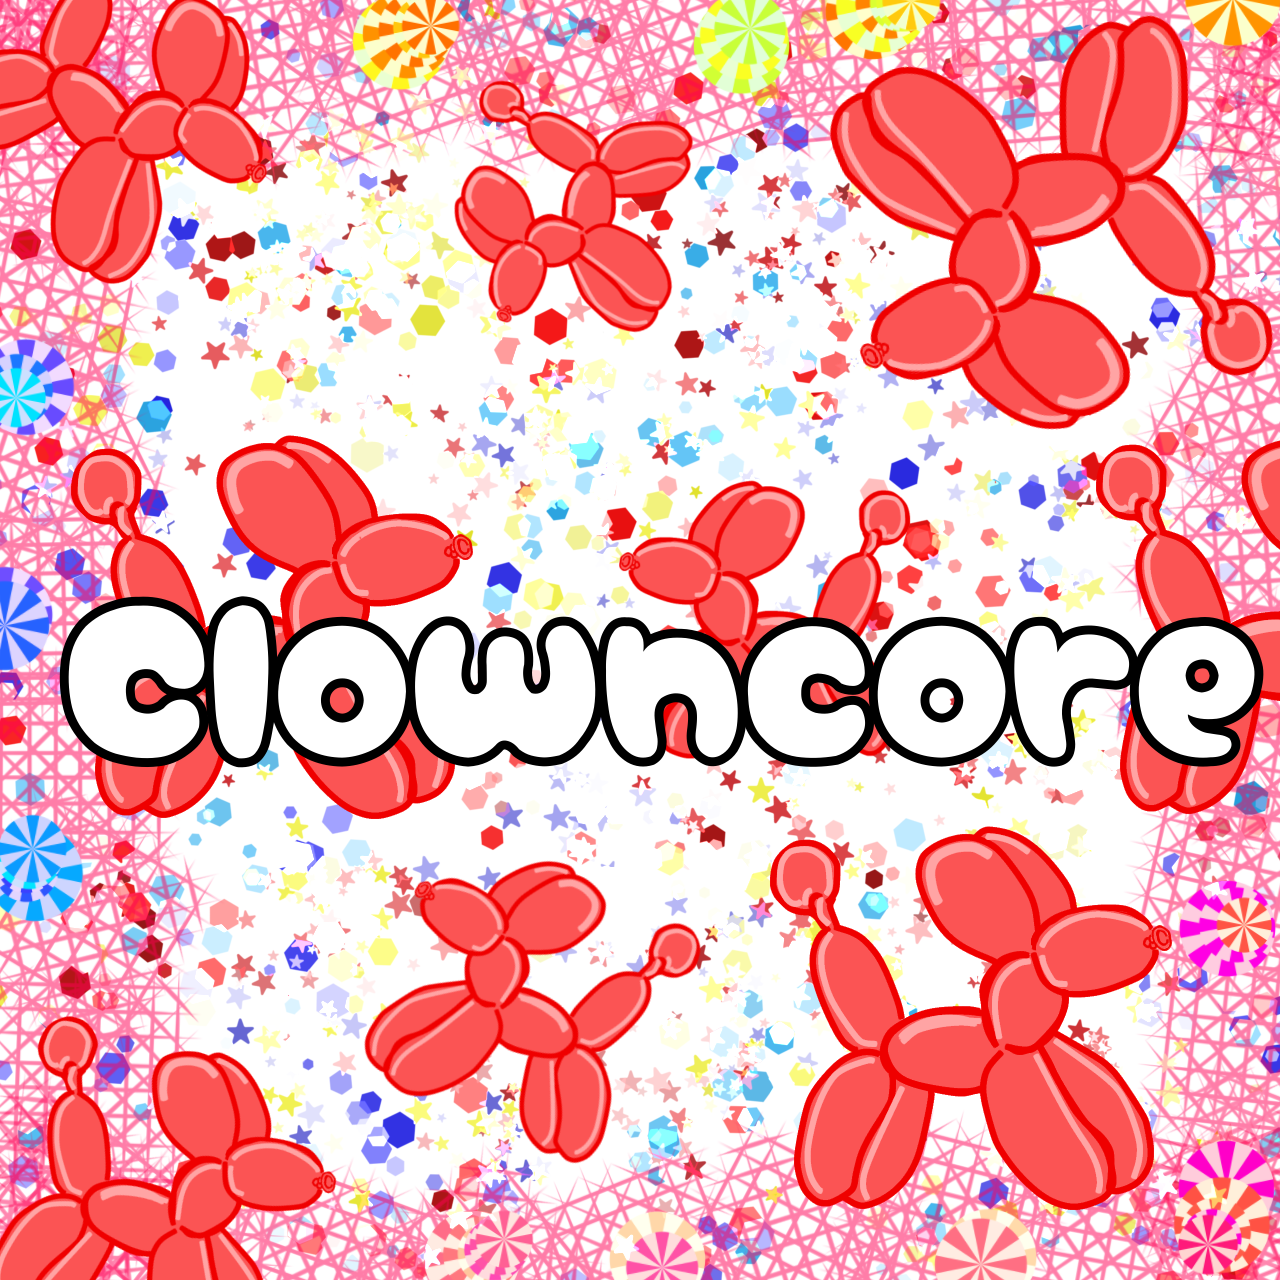 Clowncore